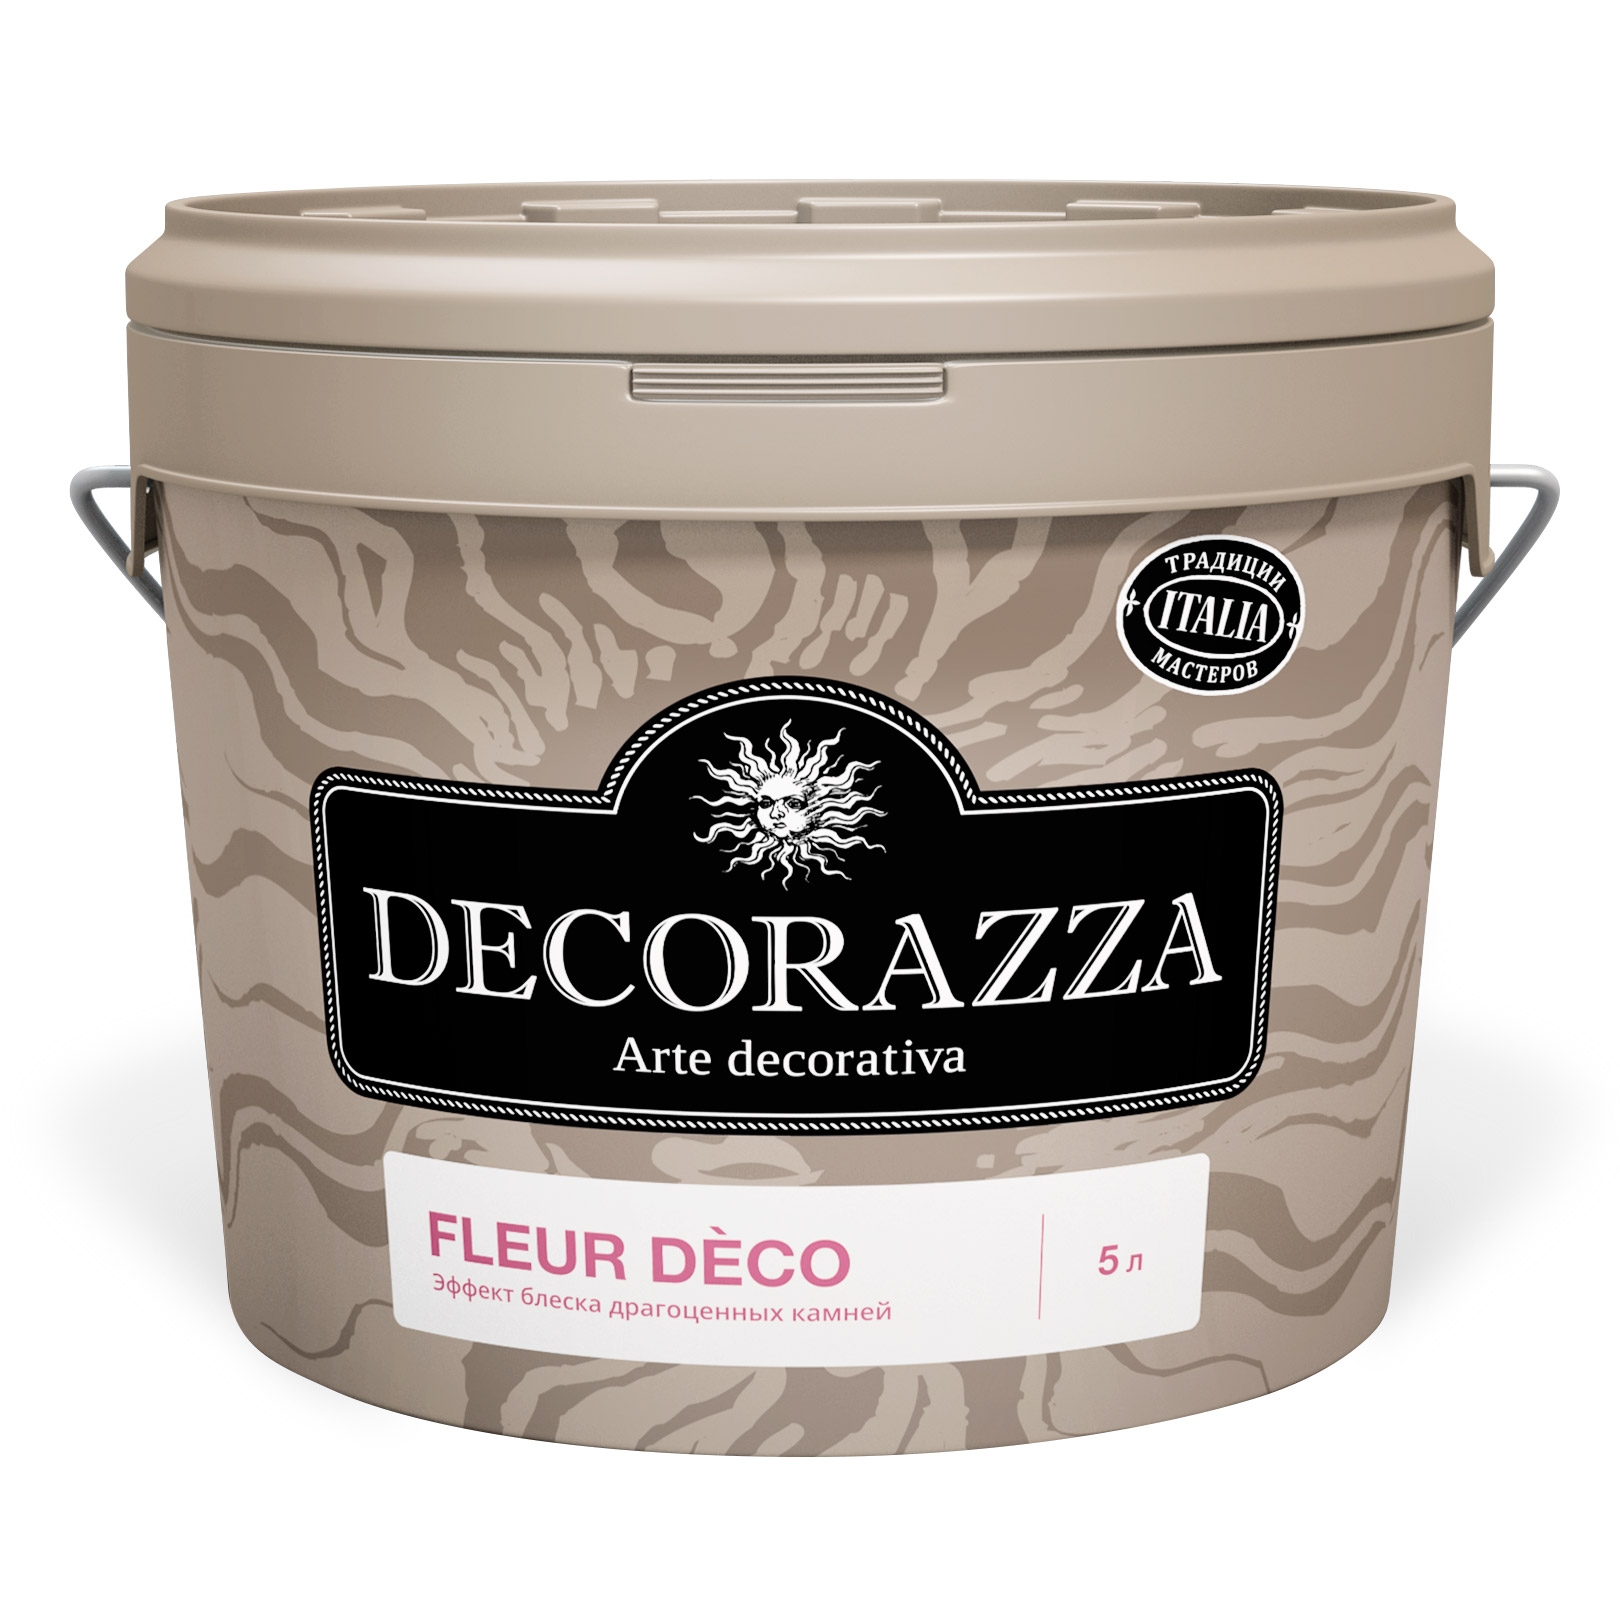 Где купить Лак Decorazza Dec Fleur Deco Amber 1 кг (DFD02-1) Decorazza 